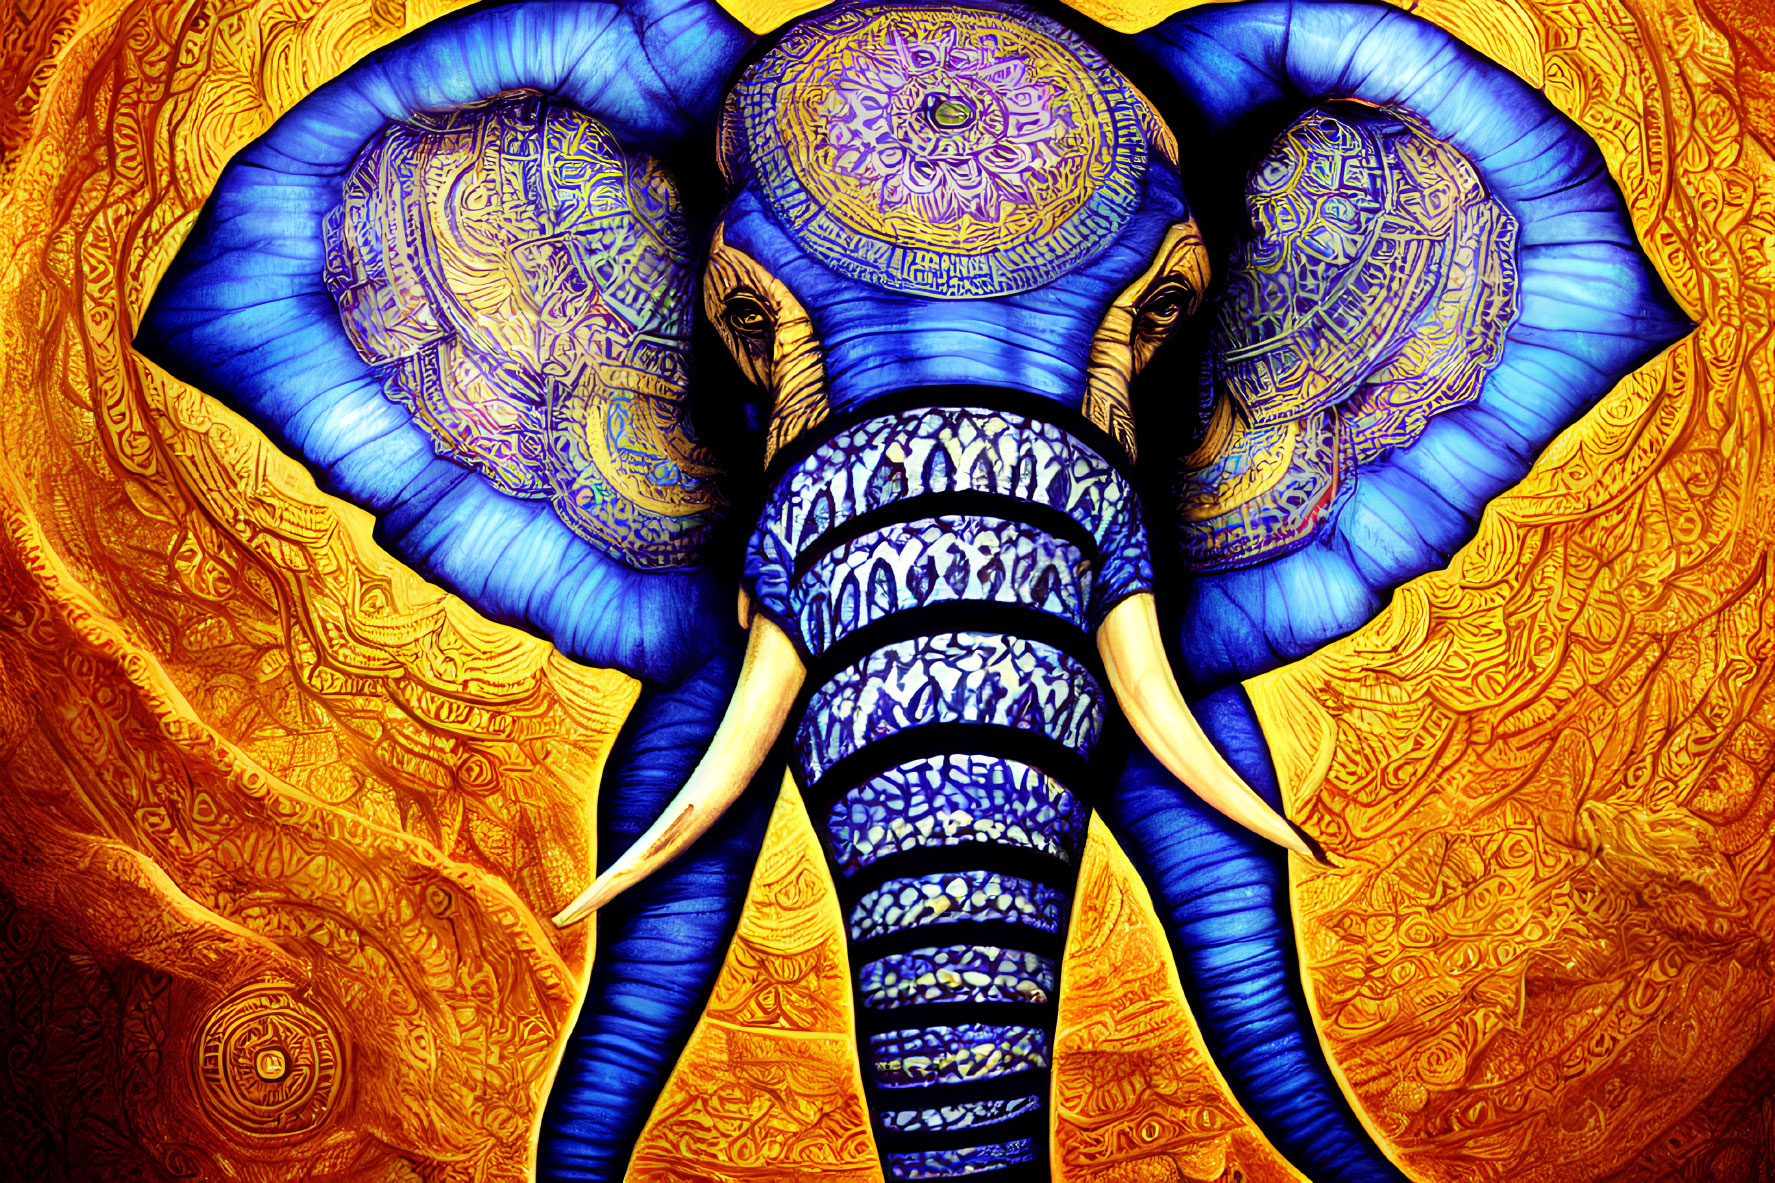 Vibrant Elephant Artwork with Mandala Patterns on Gold Background